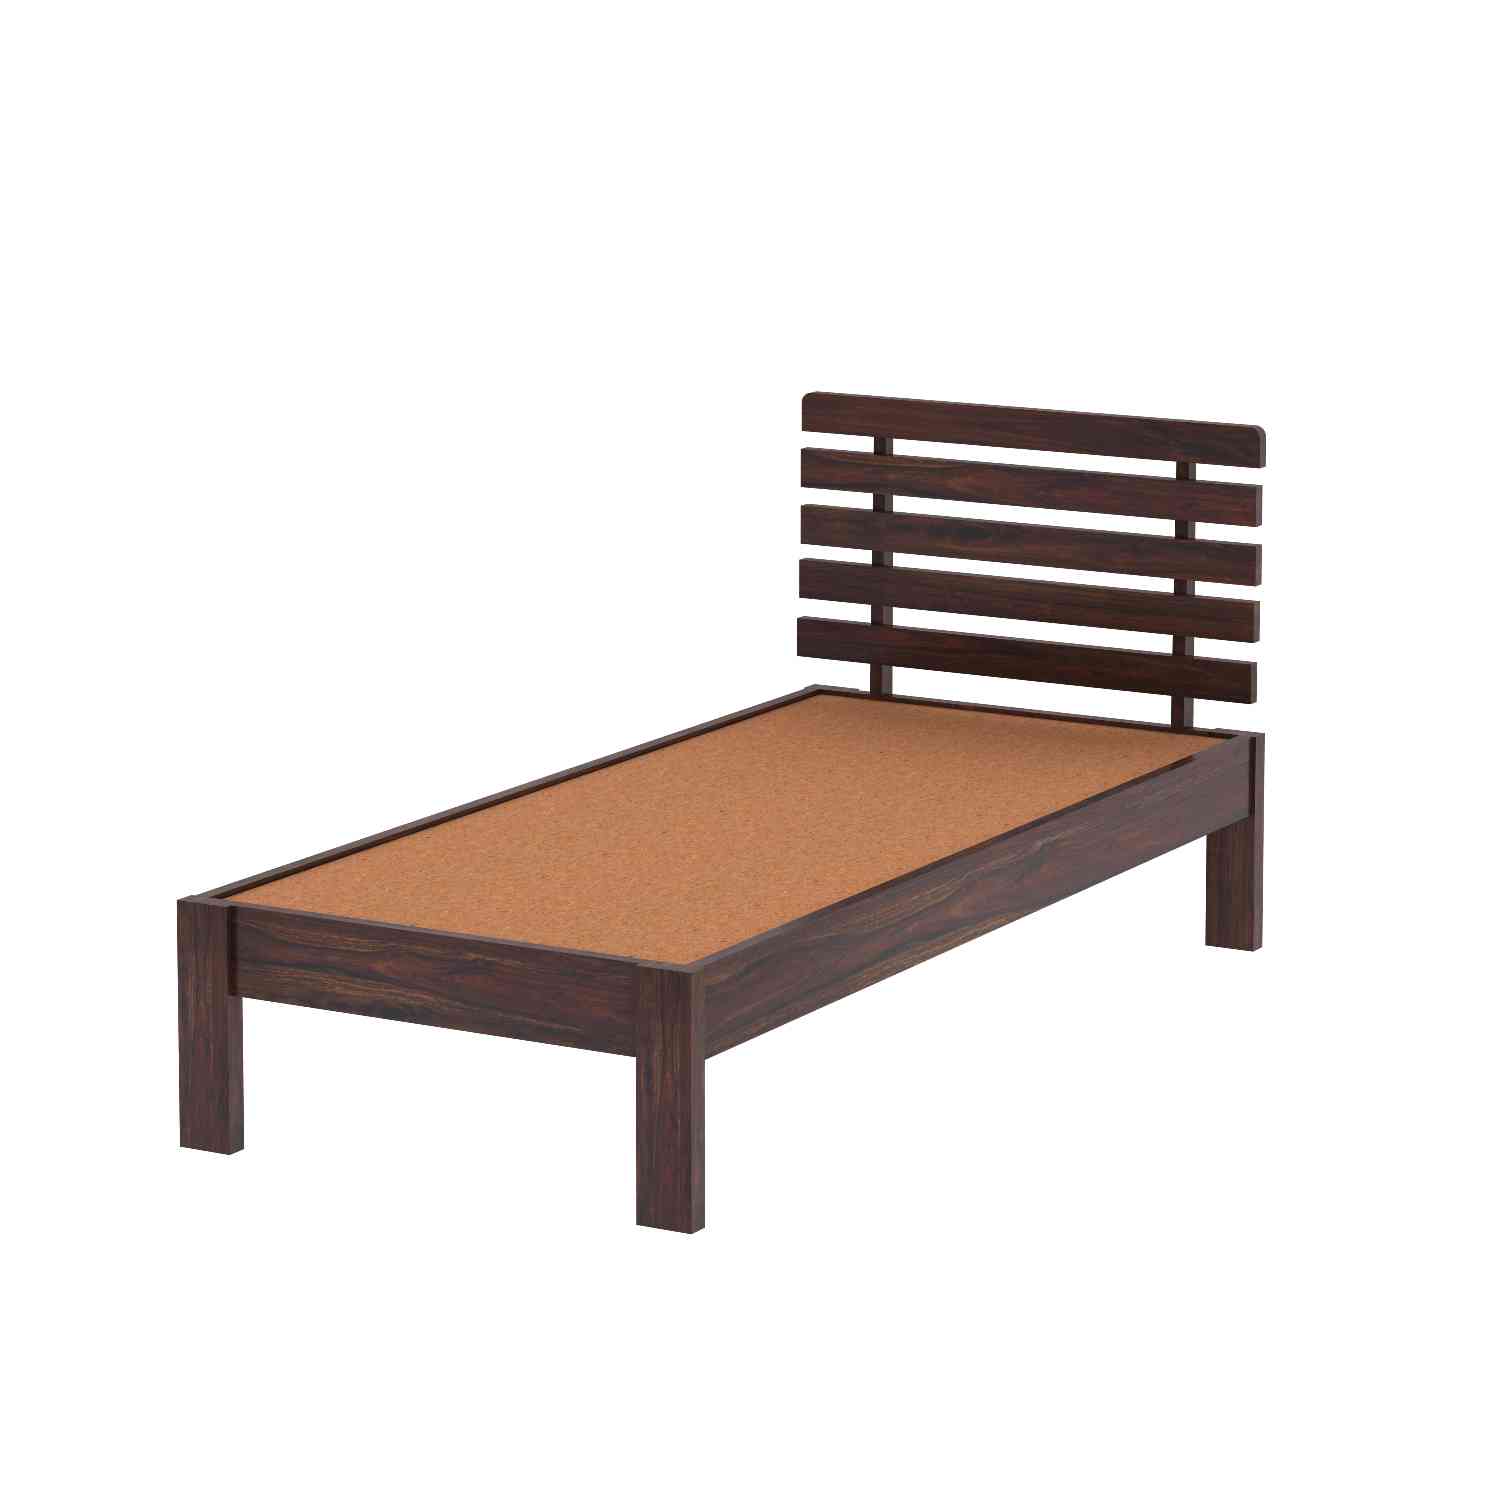 Woodora Solid Sheesham Wood Single Bed Without Storage (Walnut Finish)